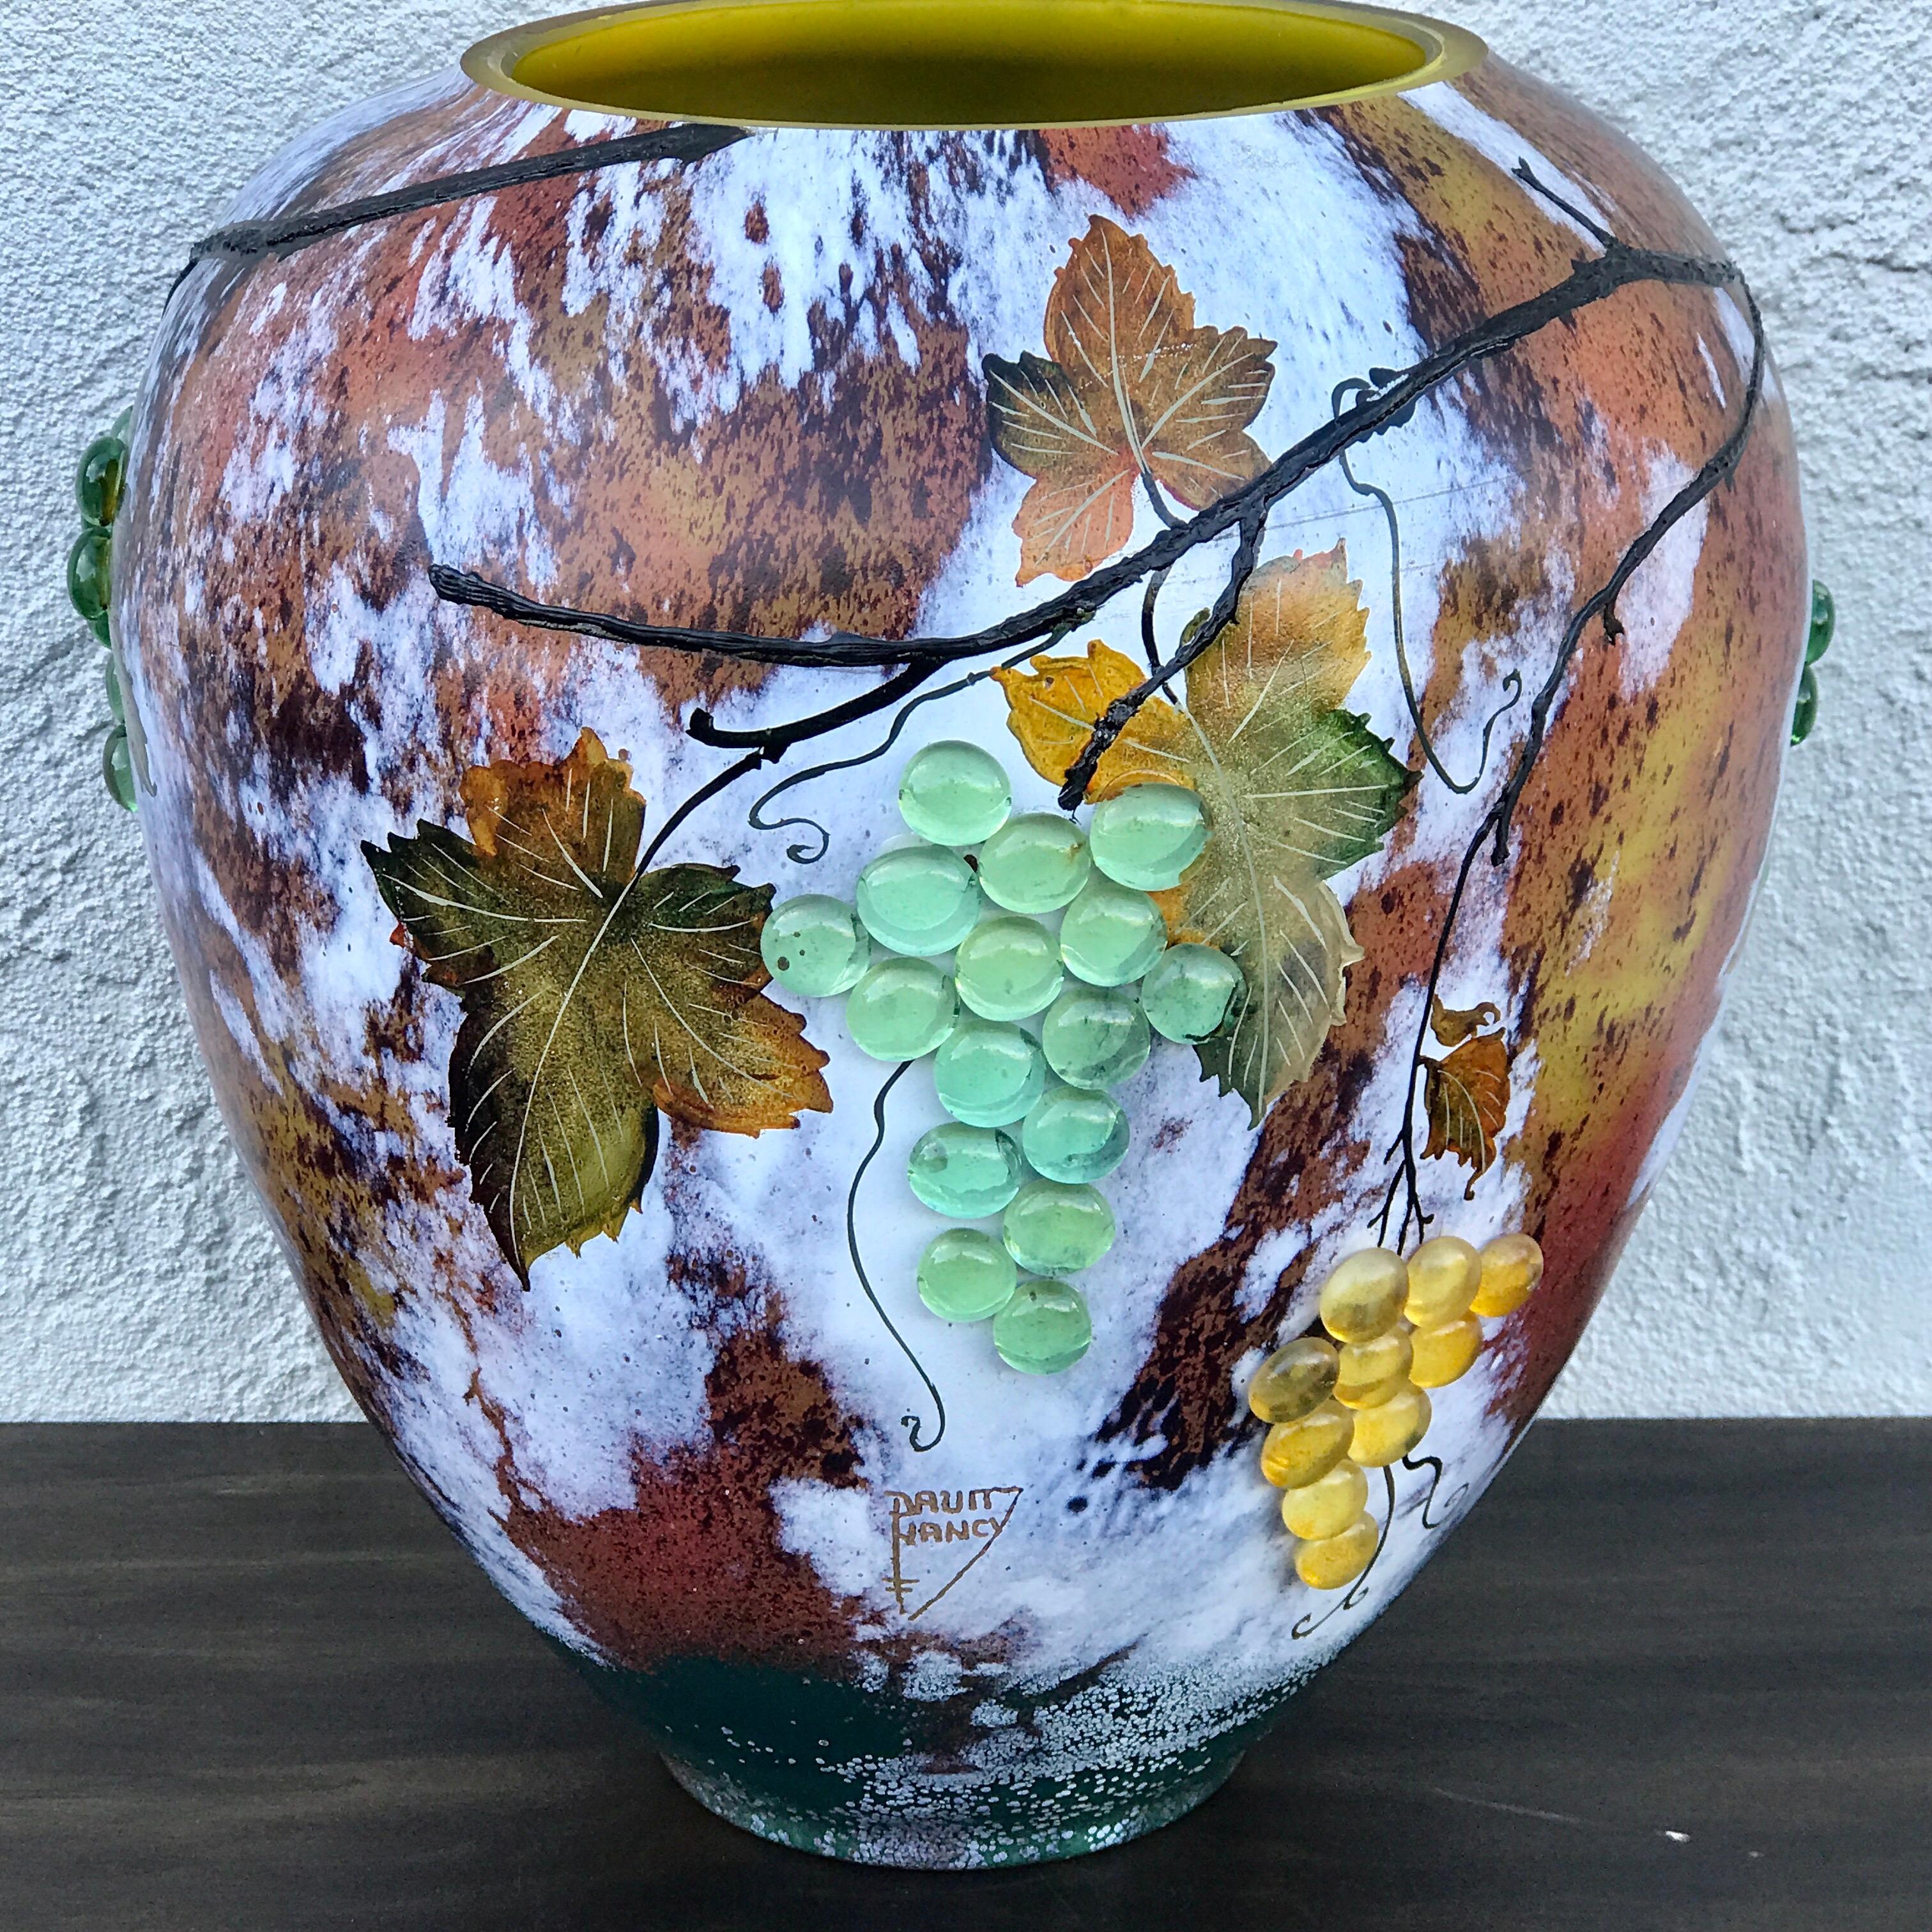 Große Vase aus Kunstglas mit applizierten Trauben, nach Daum Nancy

Sehen Sie sich unsere exquisite große Kunstglasvase mit applizierten Trauben an, ein atemberaubendes Beispiel des späten 20. Jahrhunderts für die feine, an Daum Nancy erinnernde